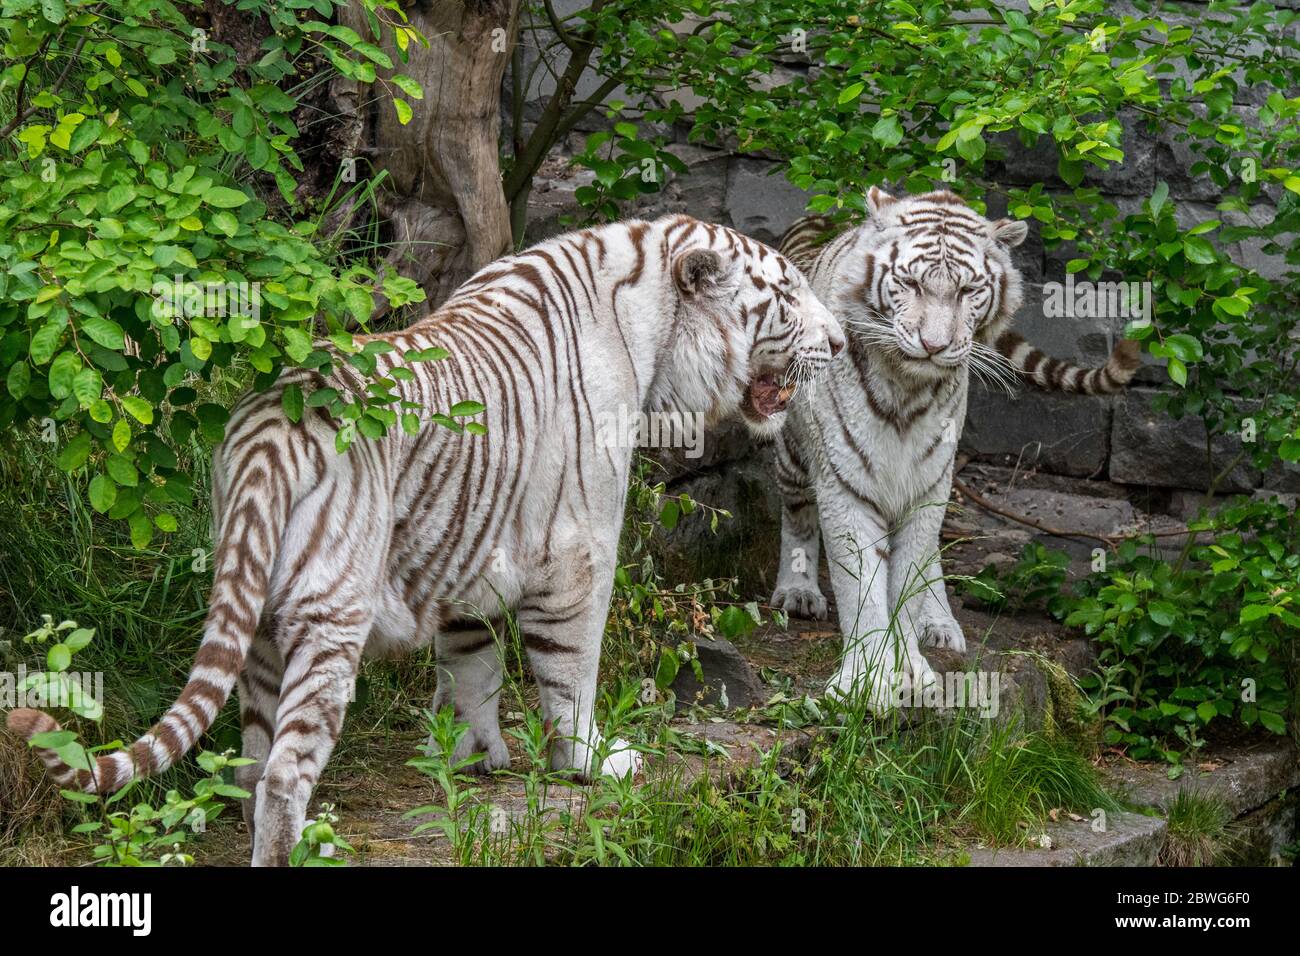 Deux tigres blancs / paire de tigres blanchis (Panthera tigris) variante de pigmentation du tigre du Bengale, femelle de rencontre masculine, originaire de l'Inde Banque D'Images